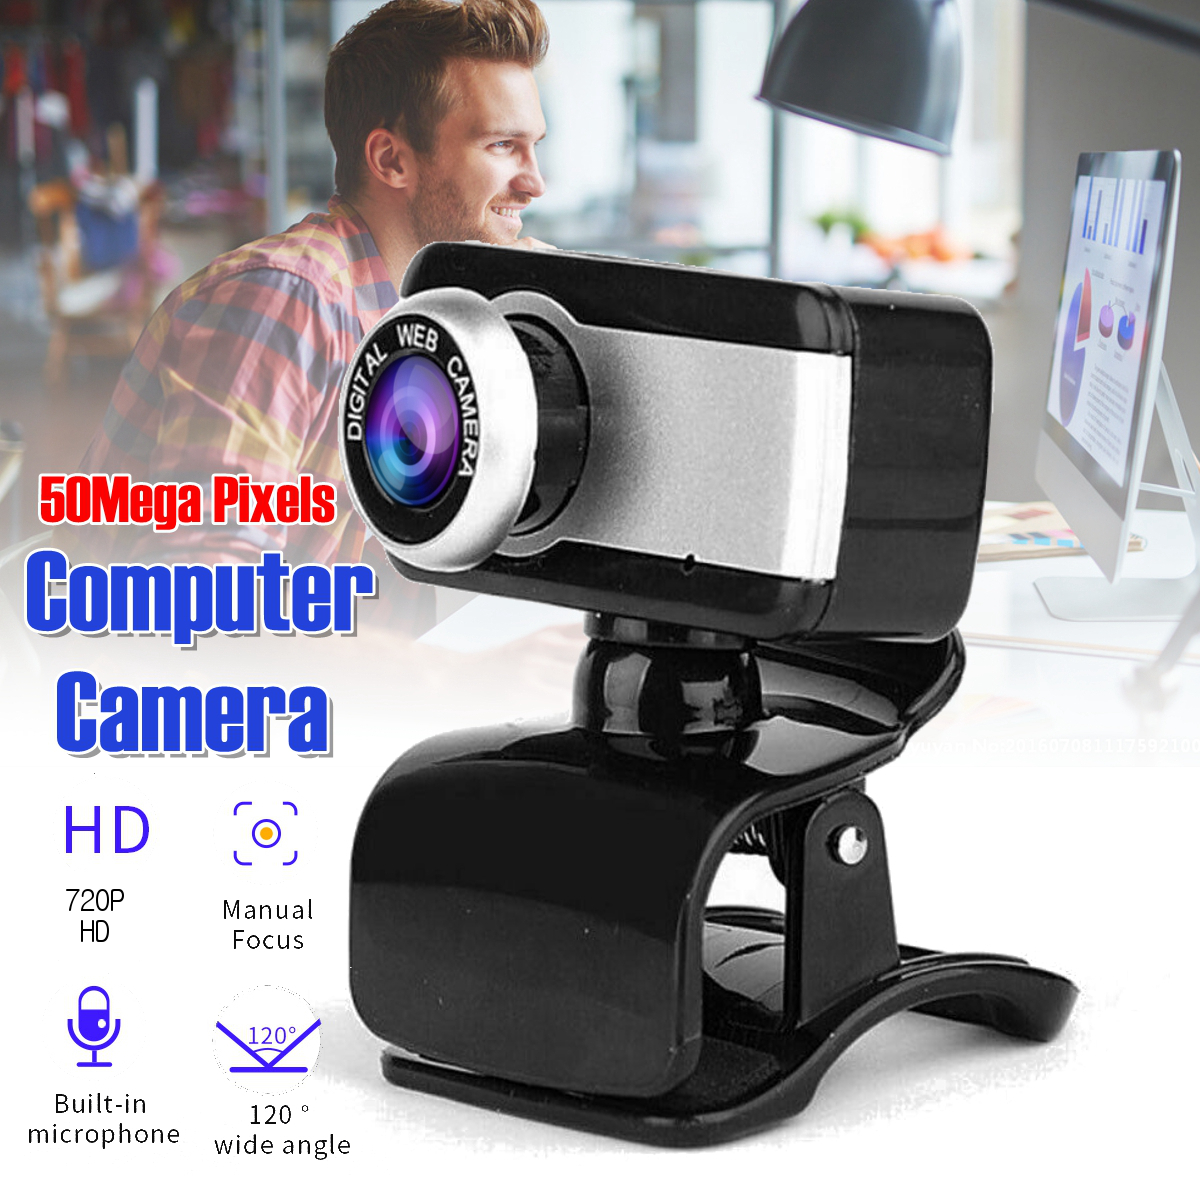 720P-HD-Webcam-CMOS-50-Mega-Pixels-USB20-Web-Camera-Built-in-Microphone-Camera-for-Desktop-Computer--1769965-1